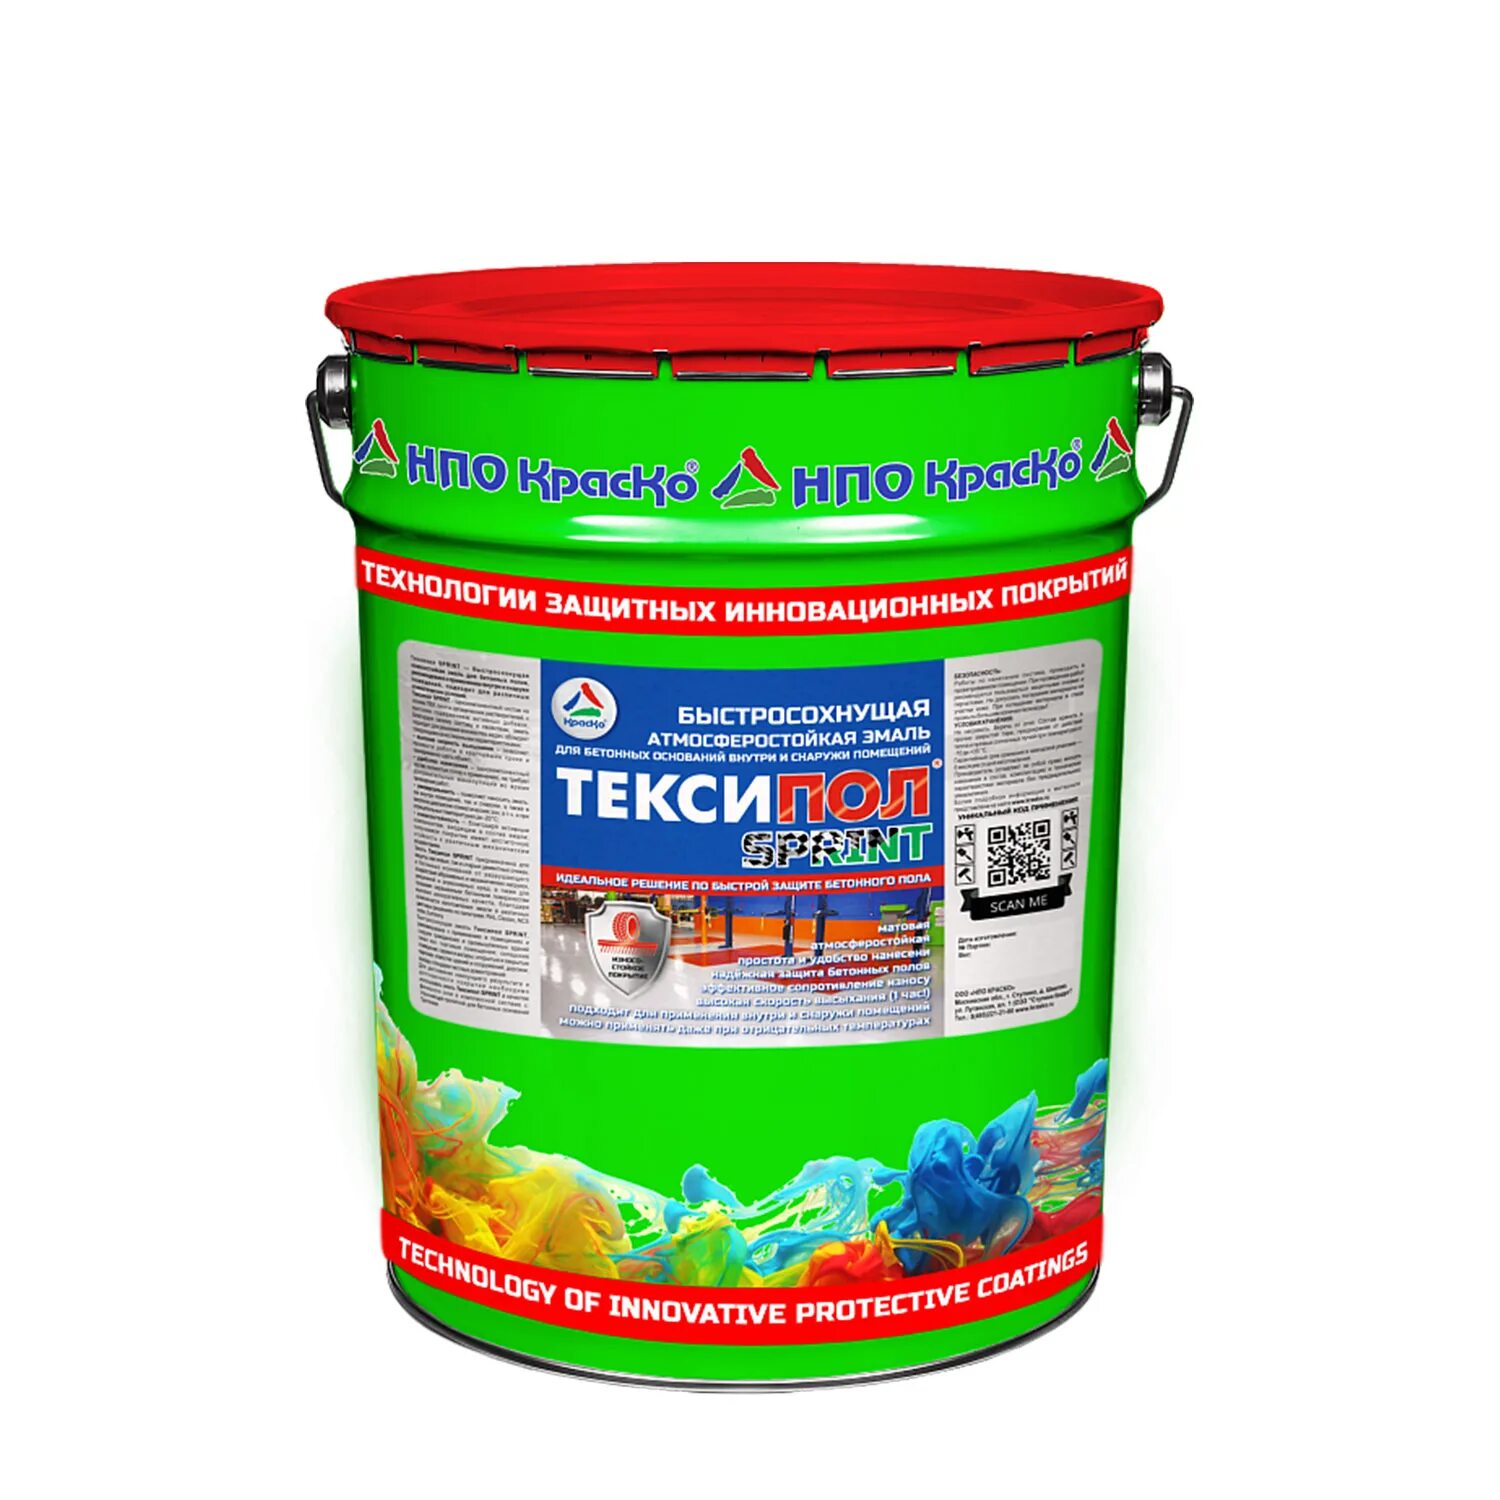 Полимерстоун-1 — полиуретановая эмаль для бетонного пол. Краска фасадная ультра 1 RAL 7040 25 кг. Полиуретановая краска Полибетол. Эполаст эпоксидный наливной пол.